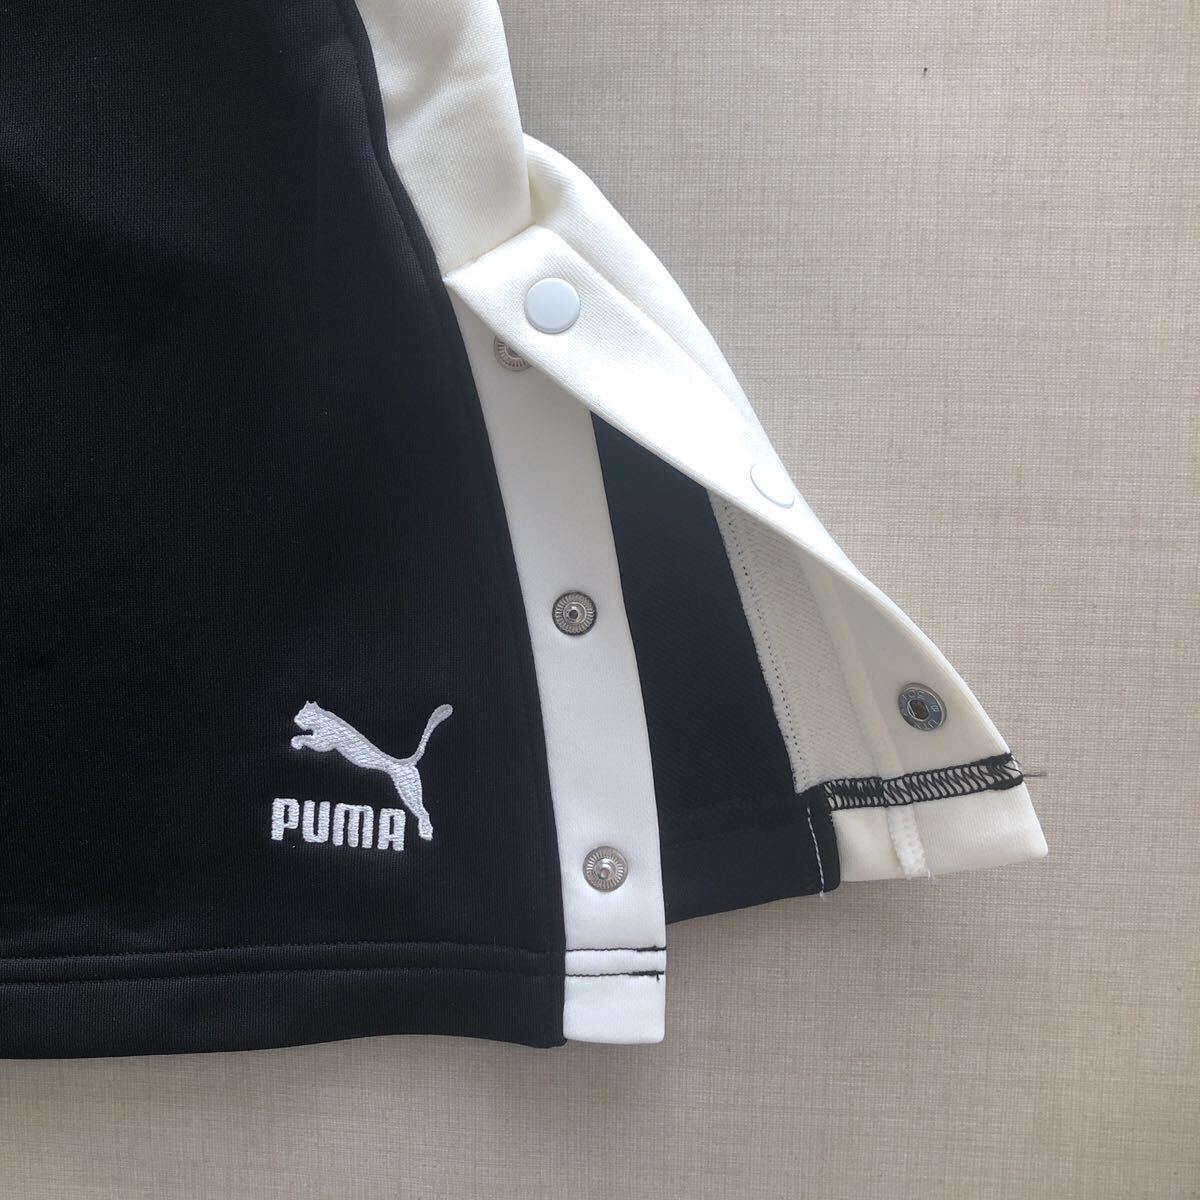  new goods * unused PUMA skirt * L * 532293 Puma 